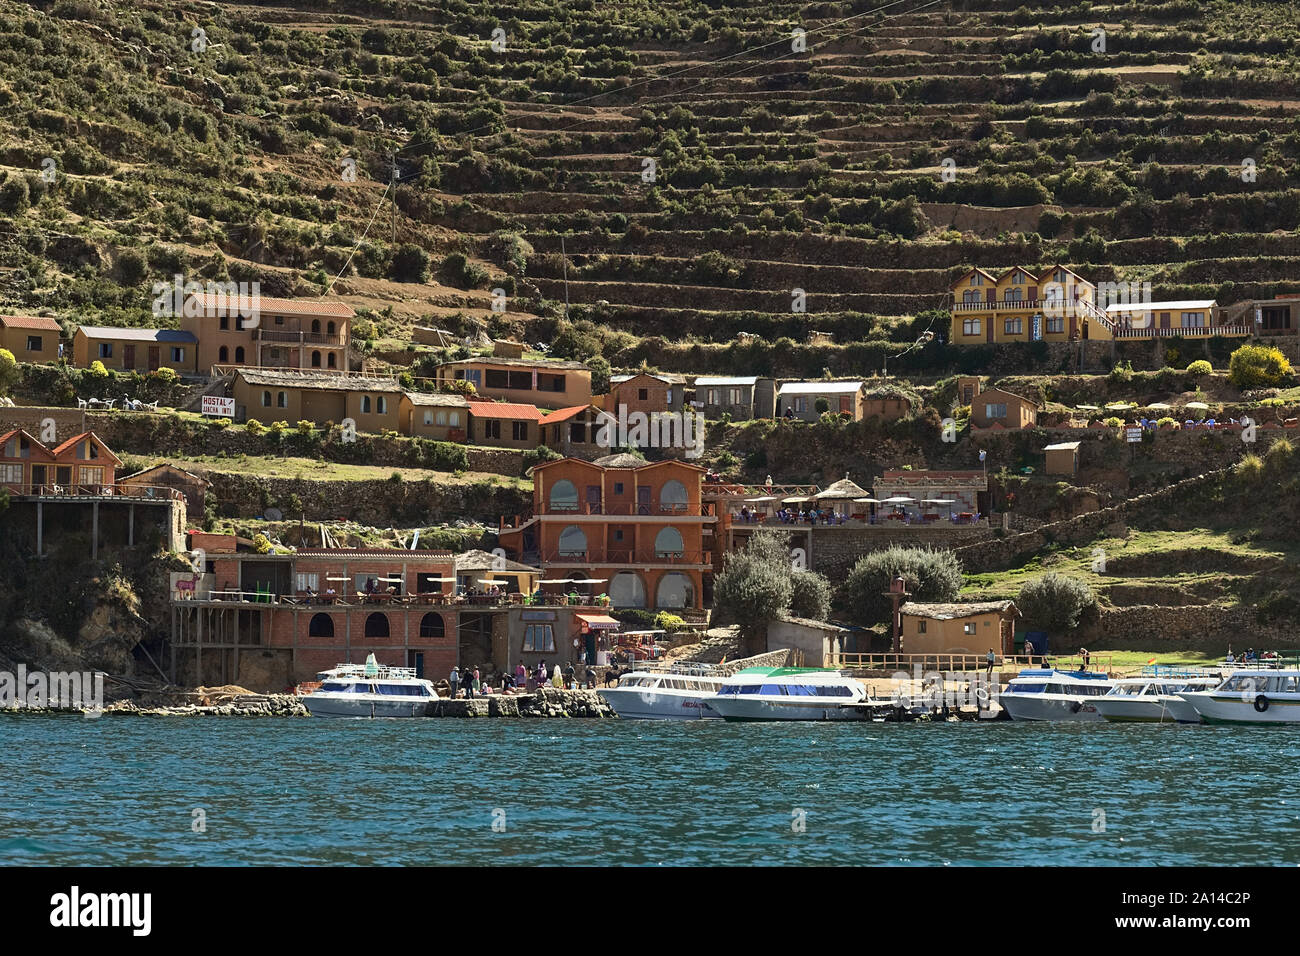 YUMANI, BOLIVIE - 5 novembre, 2014 : le port et les terrasses sur les hauteurs de Yumani sur la partie sud de l'Isla del Sol du Lac Titicaca, en Bolivie Banque D'Images